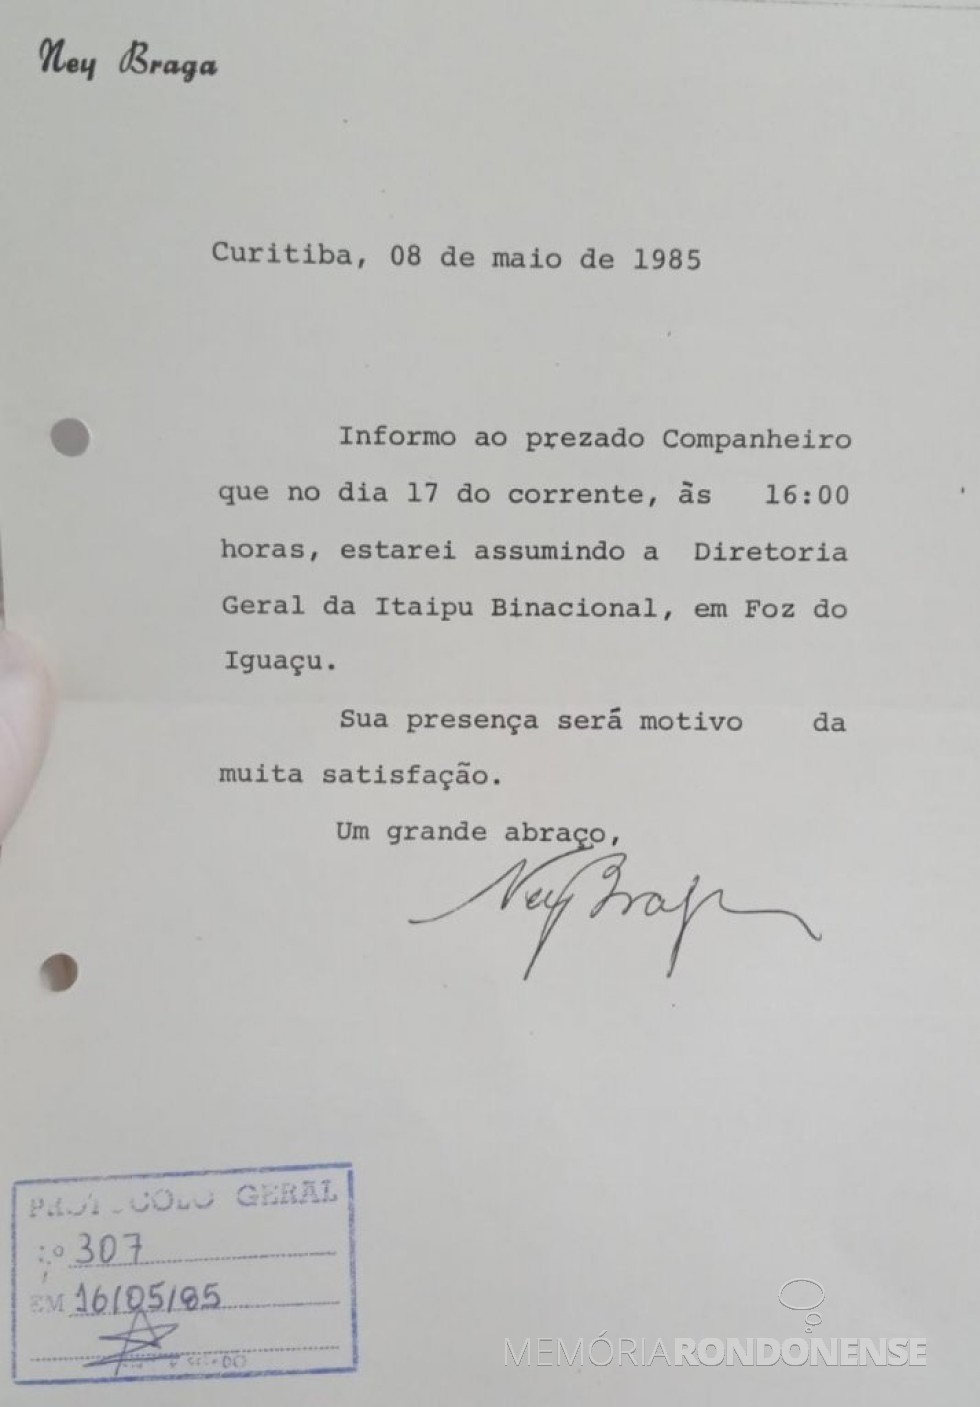 || Cópia do convite de Ney Braga para sua posse na Itaipu, dirigido à Câmara Municipal de Marechal Cândido Rondon, em maio de 1985.
Imagem> Acervo do Legislativo referenciado - FOTO 7 -